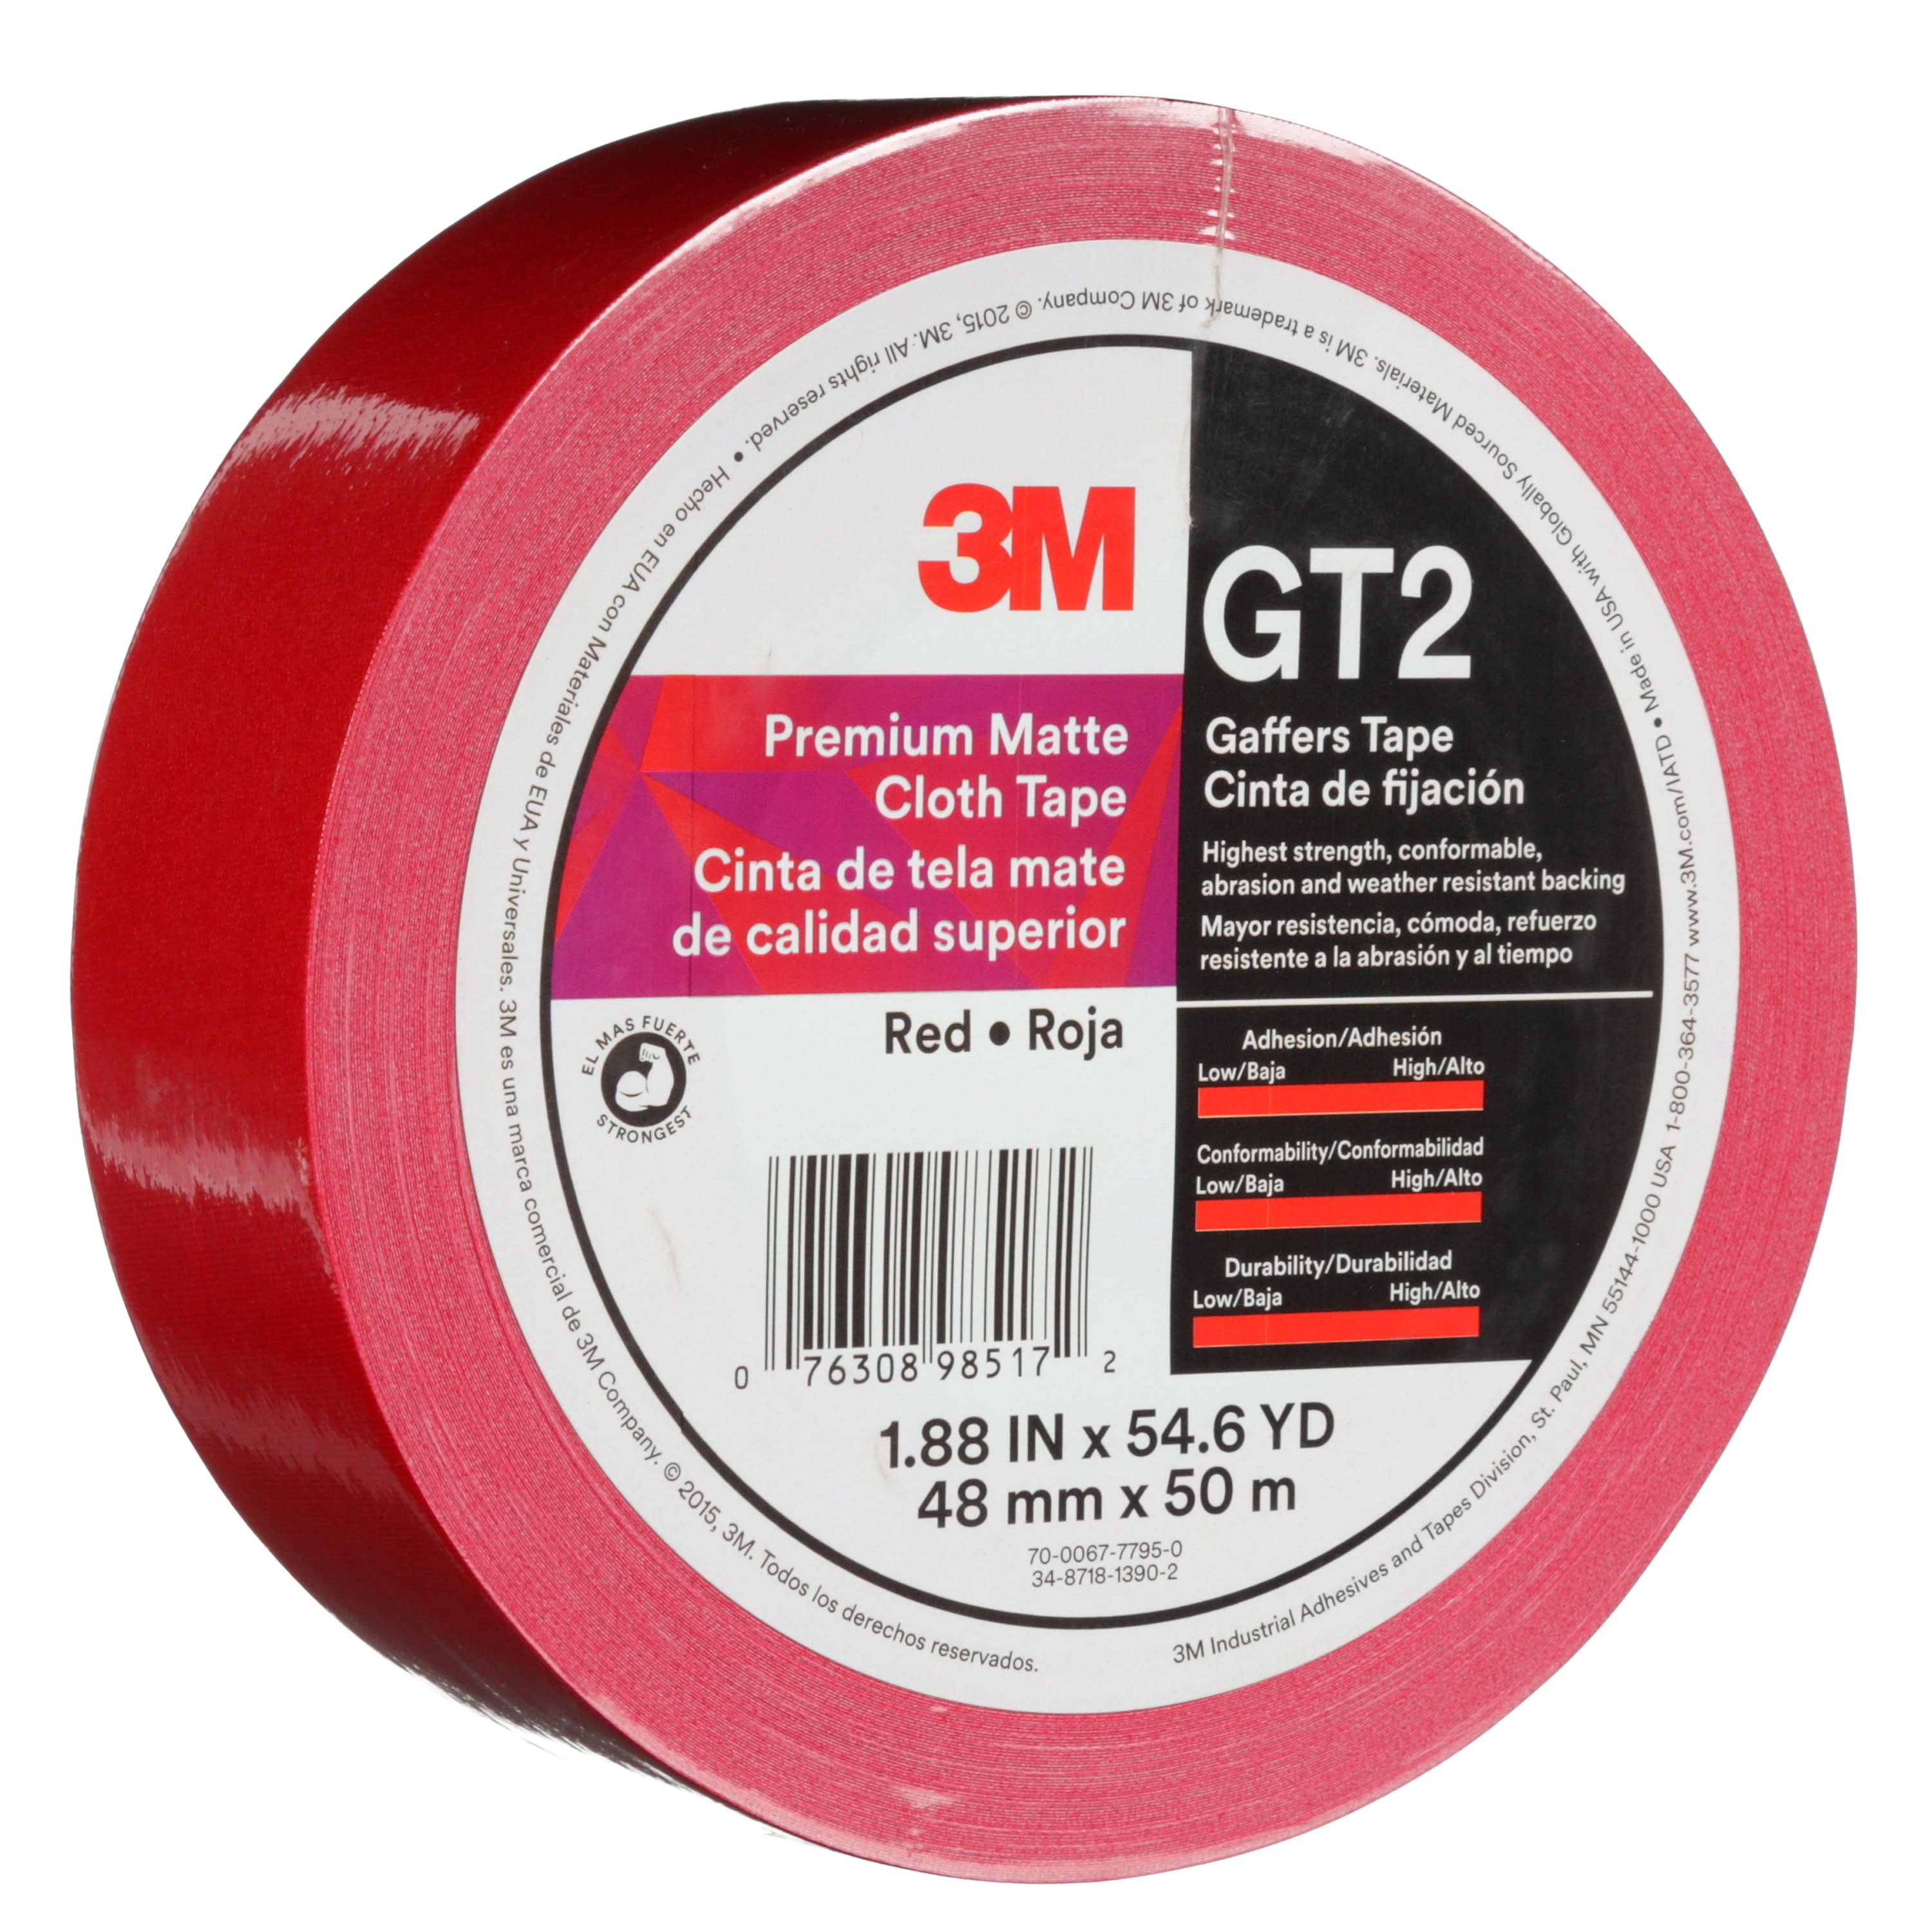 3M™ Premium Matte Cloth (Gaffers) Tape GT2, Red, 48 mm x 50 m, 11 mil,
24 per case